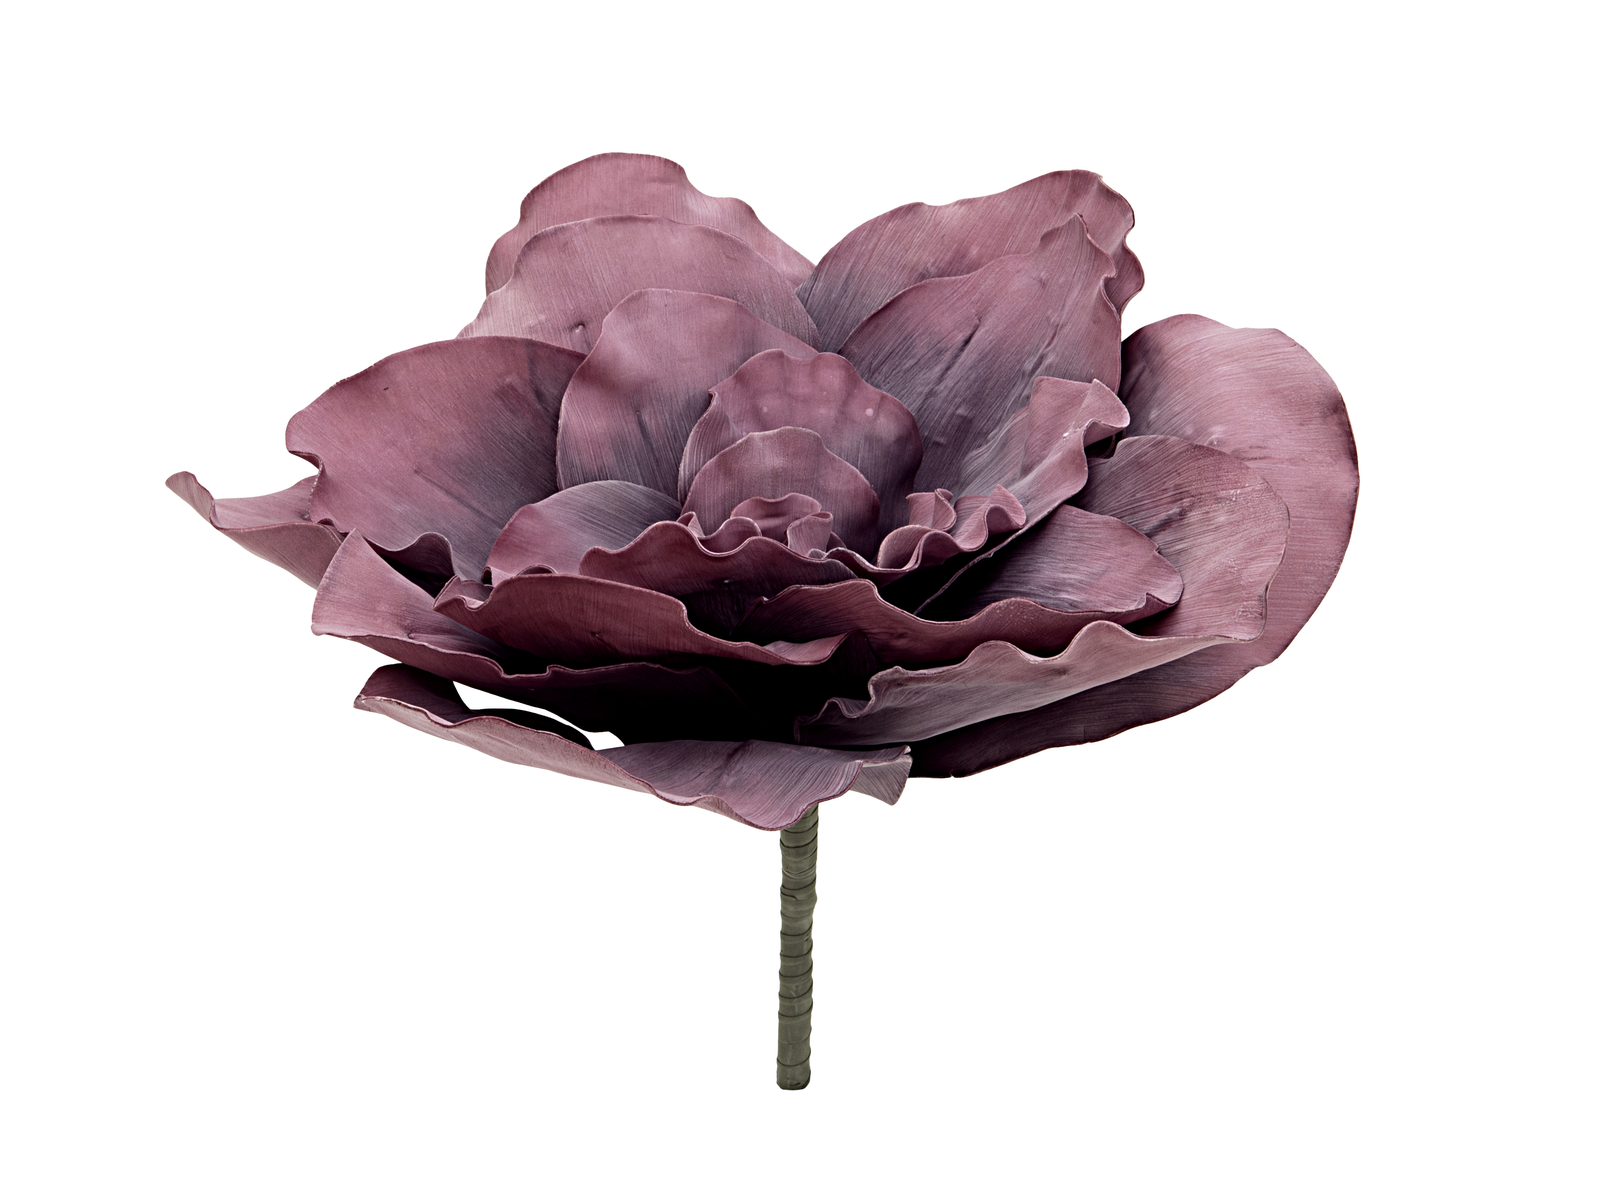 Obří květ růže (EVA), fialový, 80 cm